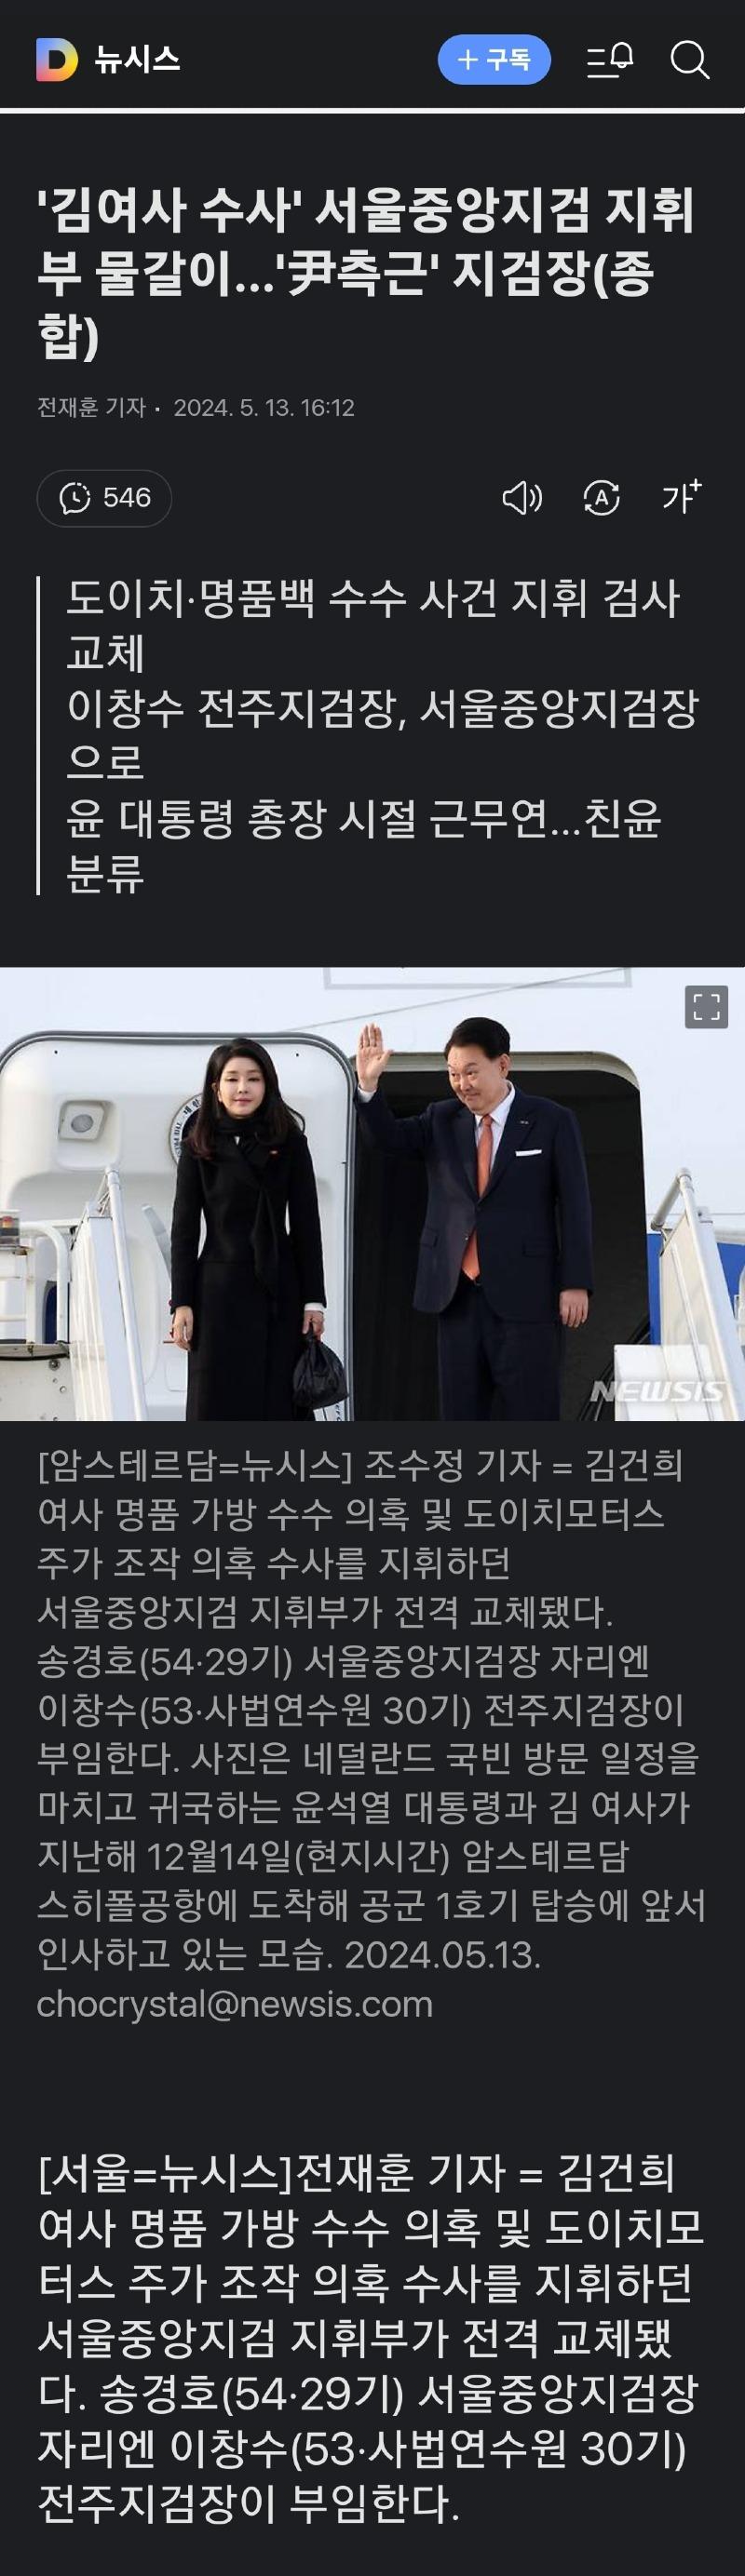 '김여사 수사' 서울중앙지검 지휘부 물갈이1.jpg